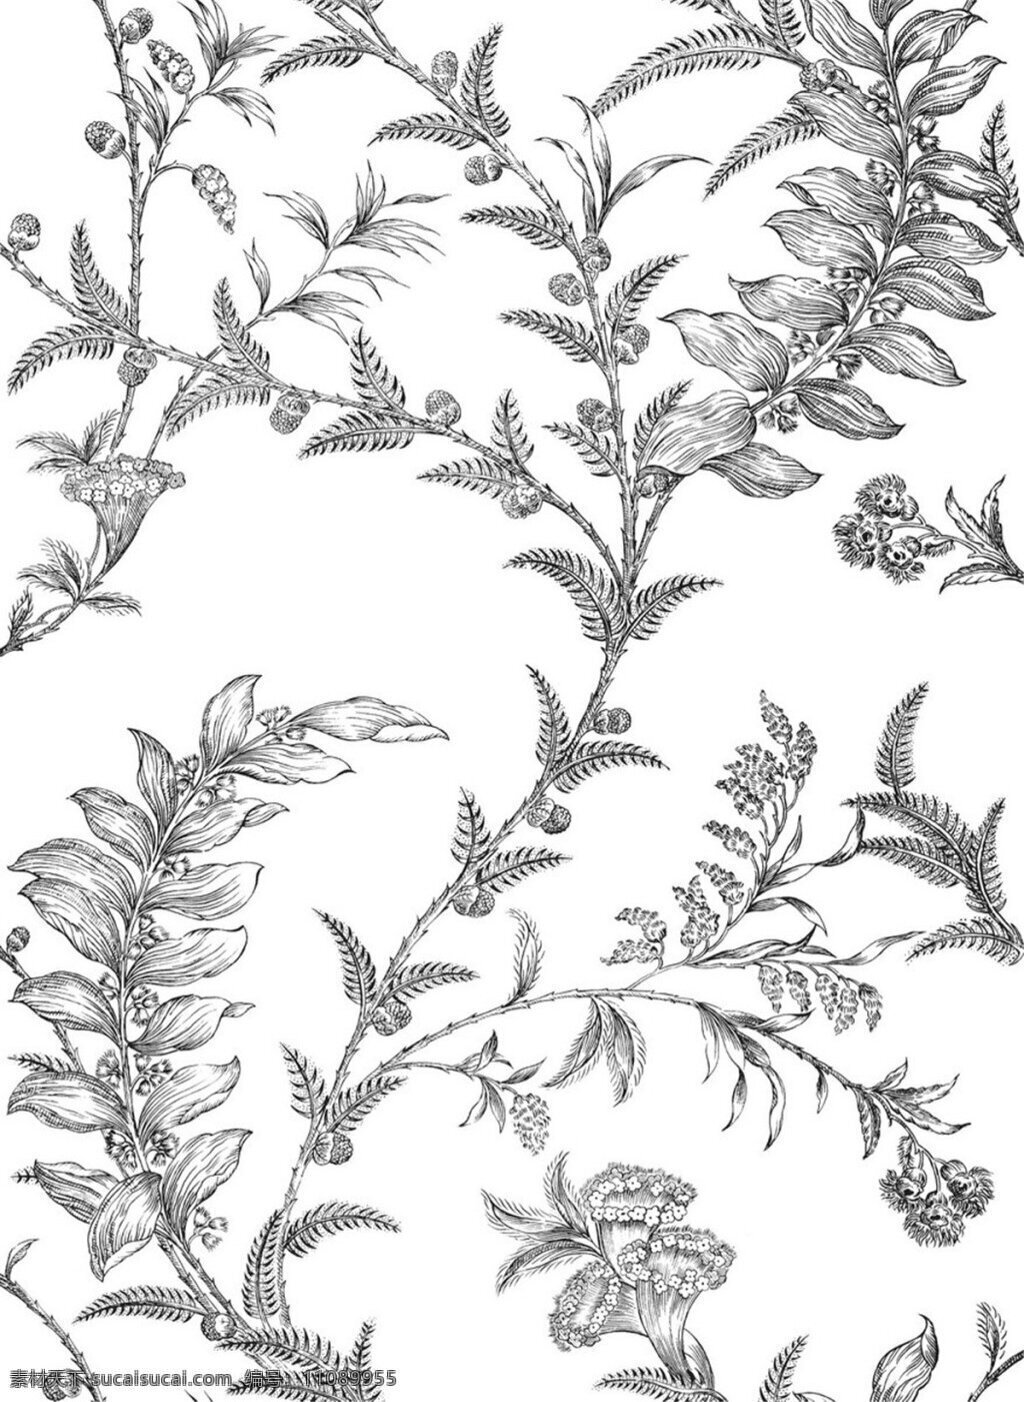 清新 雅致 灰色 植物 壁纸 图案 白色底纹 壁纸图案 素描画 植物元素